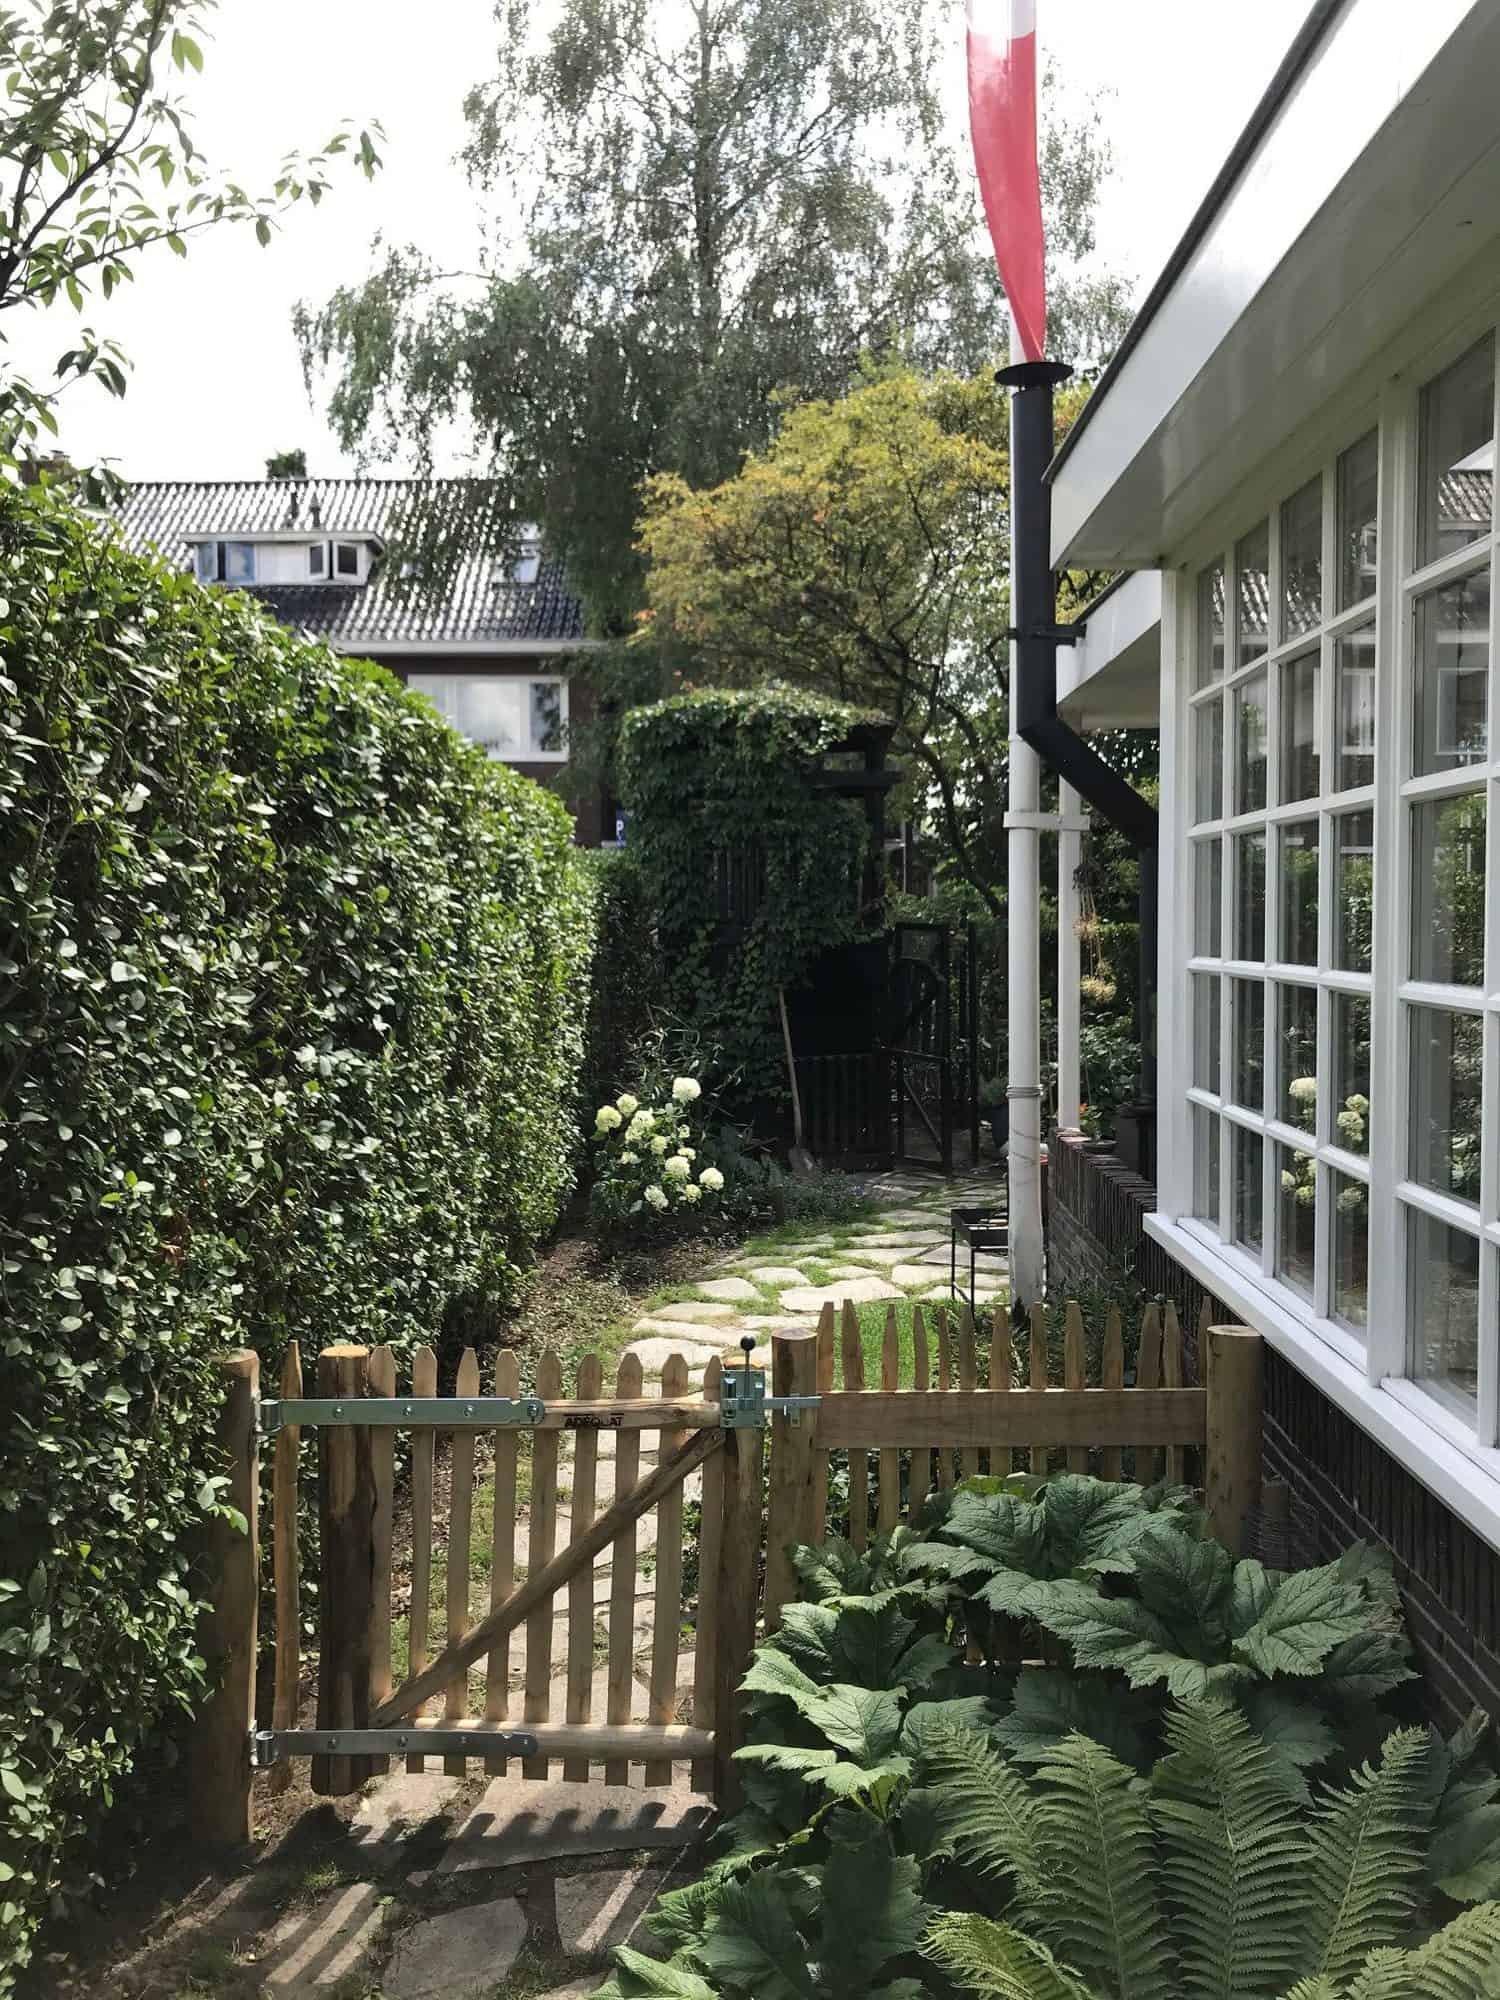 Franse rondhoutpoort van 80 cm bij 80 cm als doorgang naar een tuin